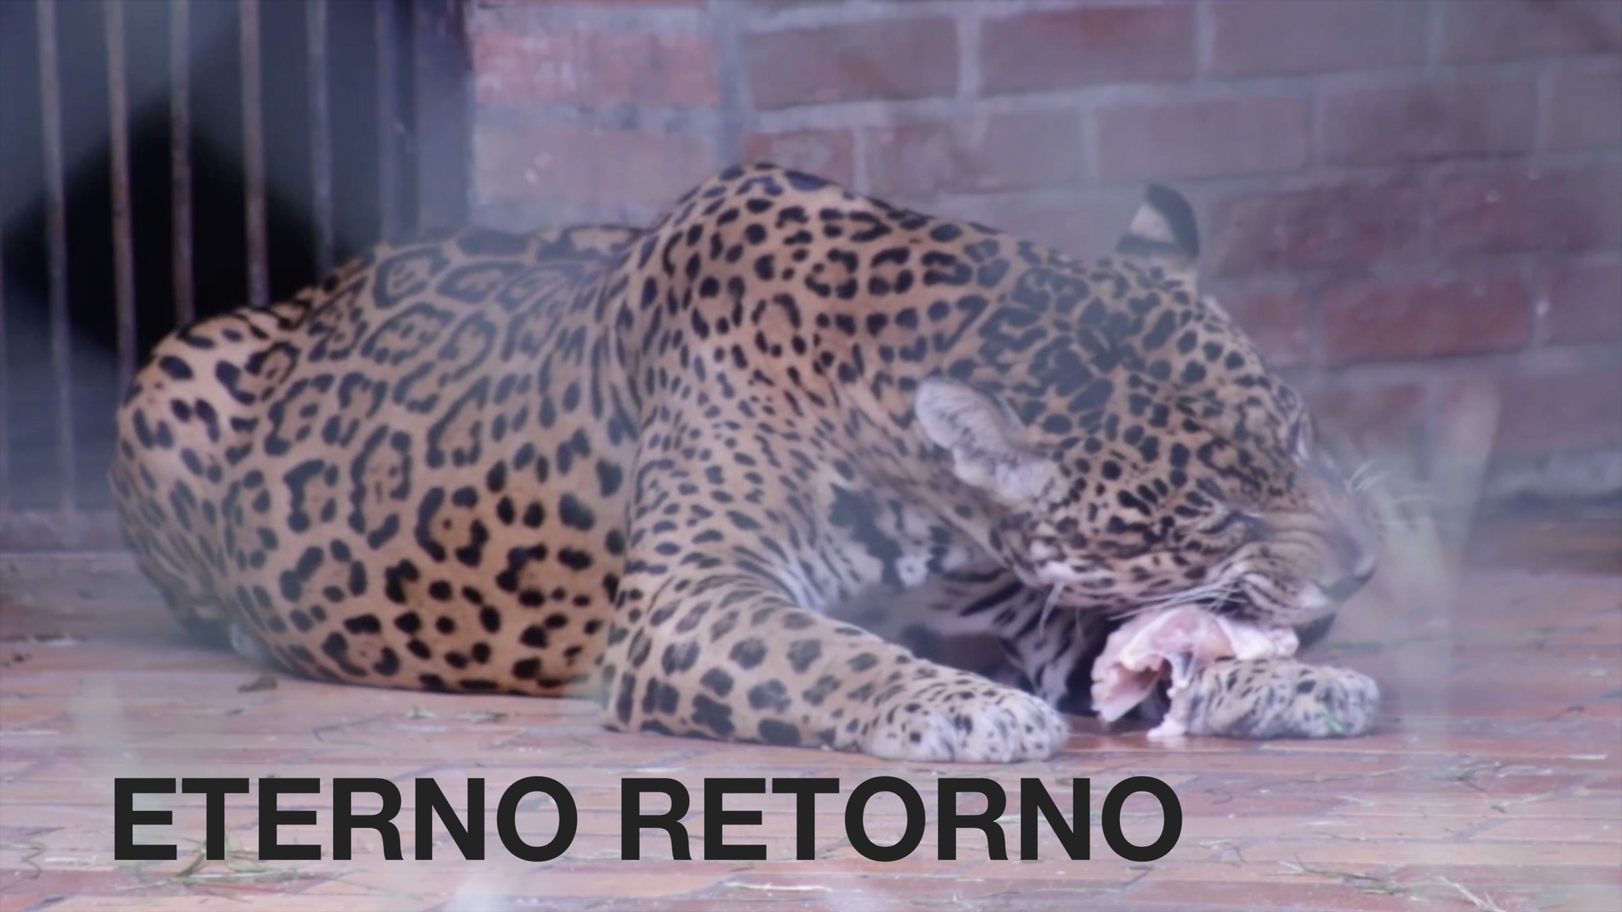 ETERNO RETORNO (2020) – Som Binaural/Fones de Ouvido